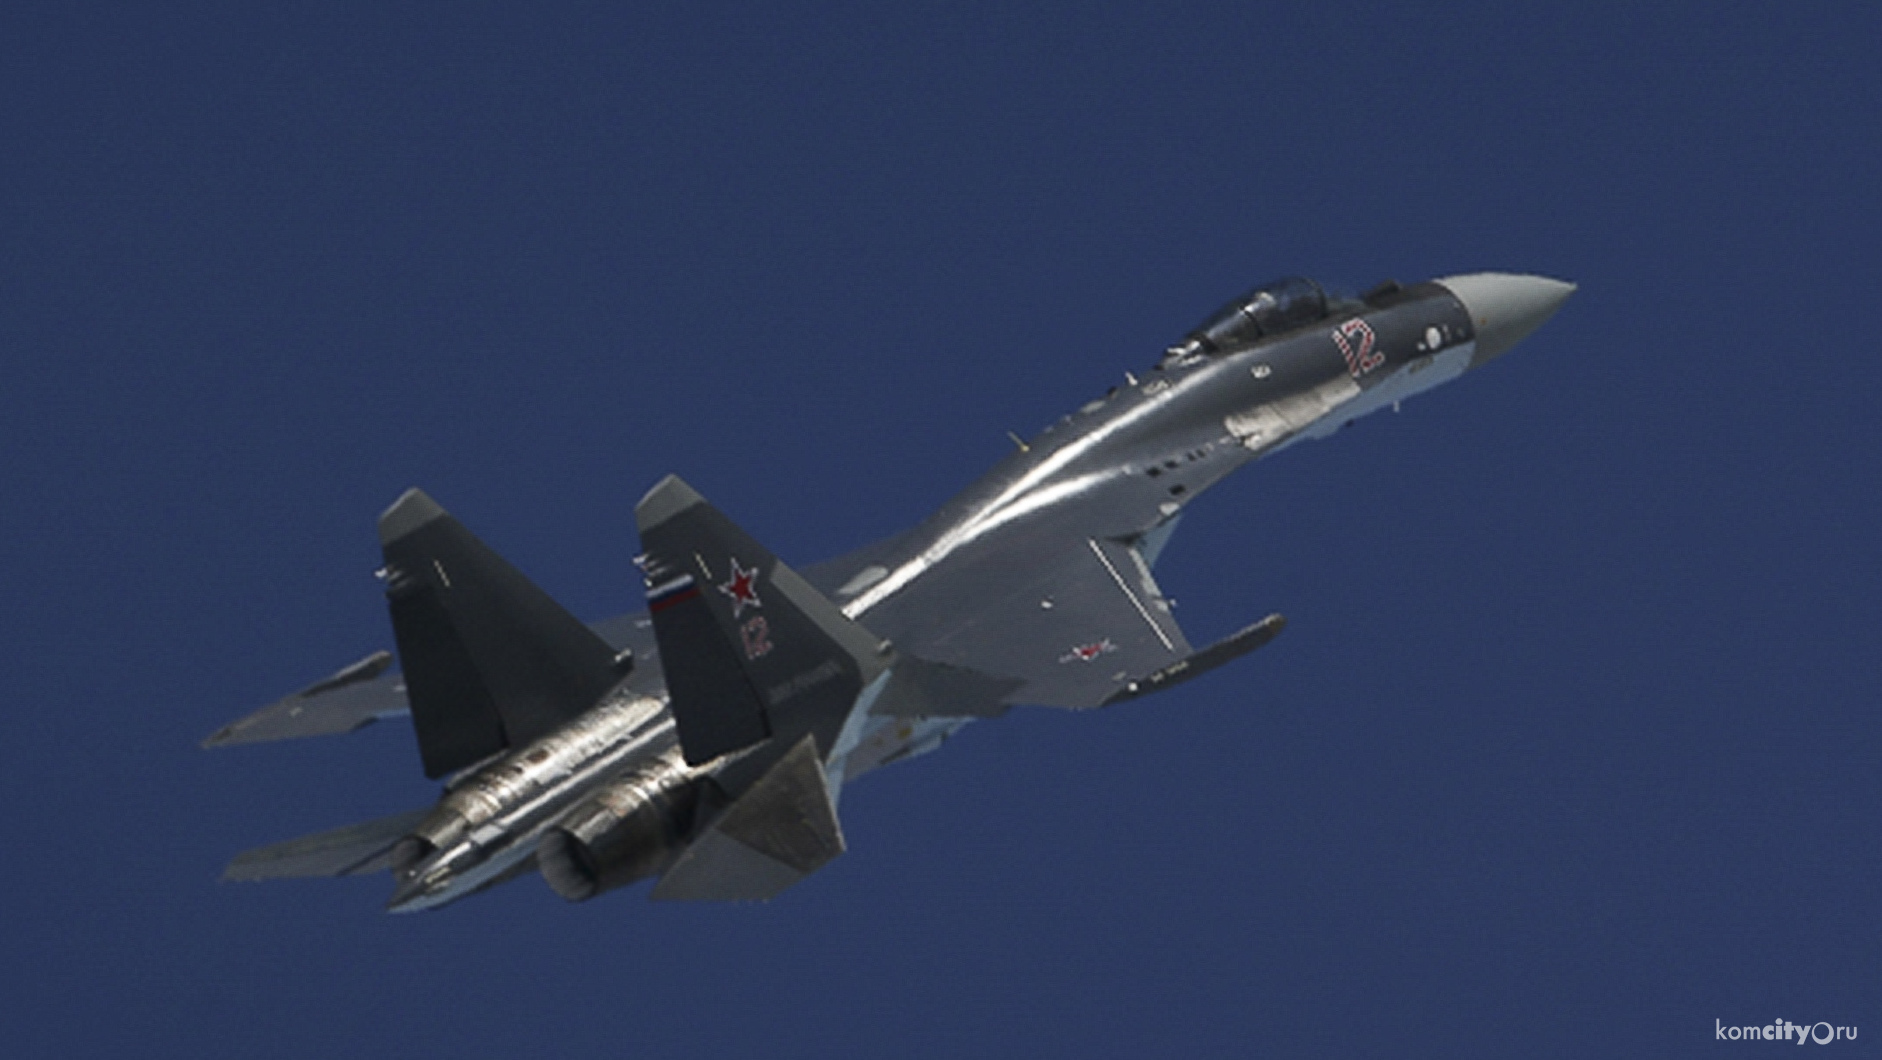 Построенные в Комсомольске Су-35 прилетели в Карелию